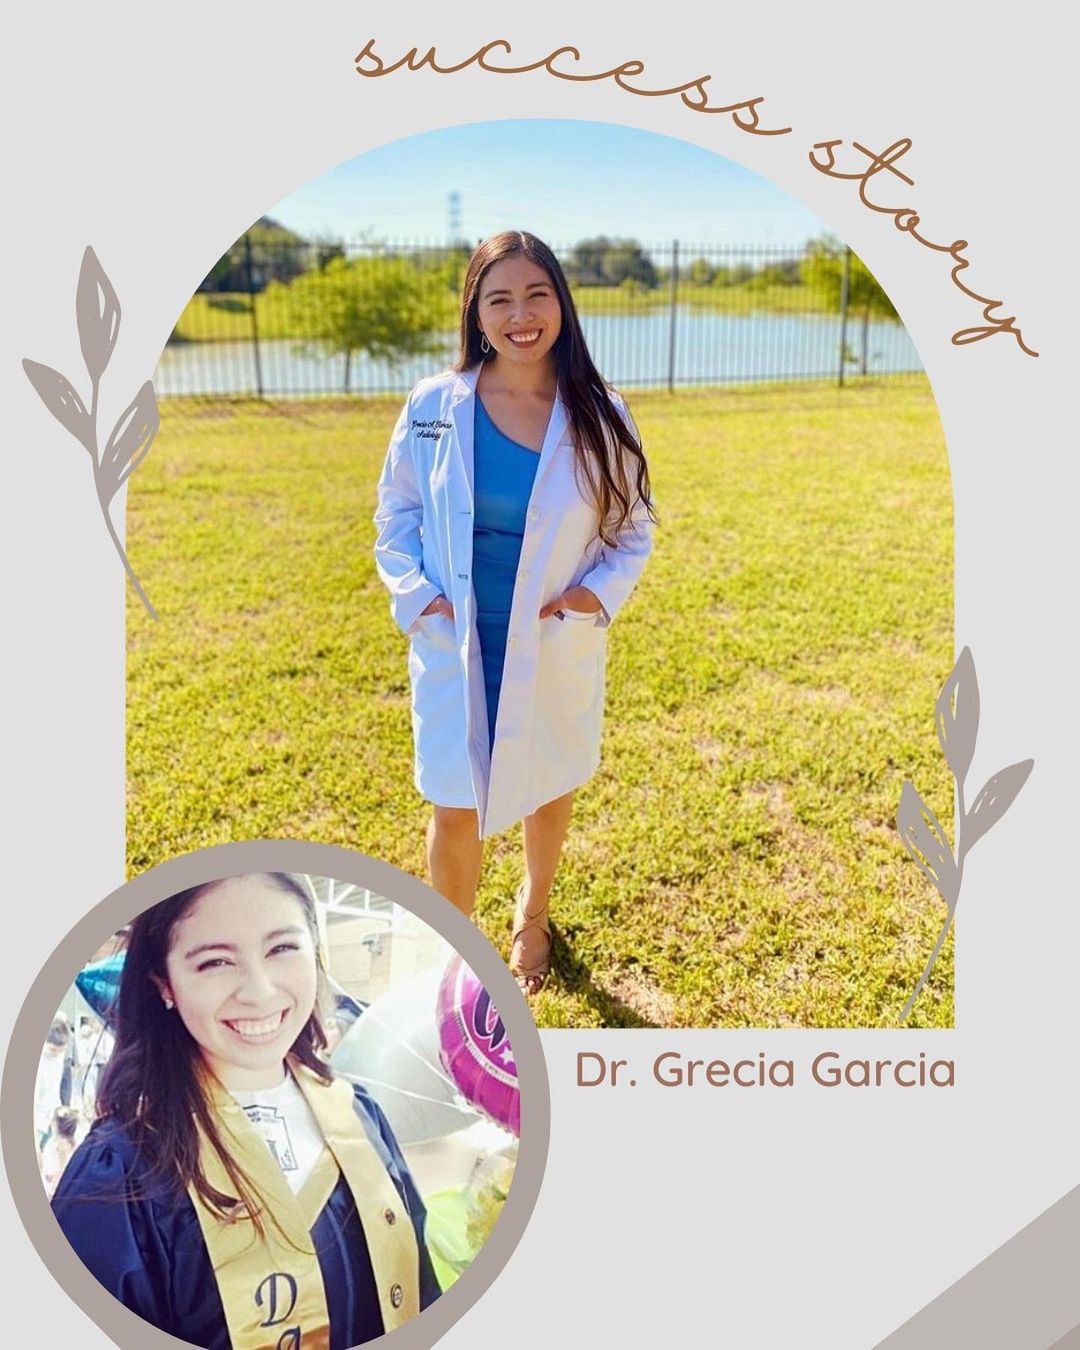 Dr. Grecia Garcia